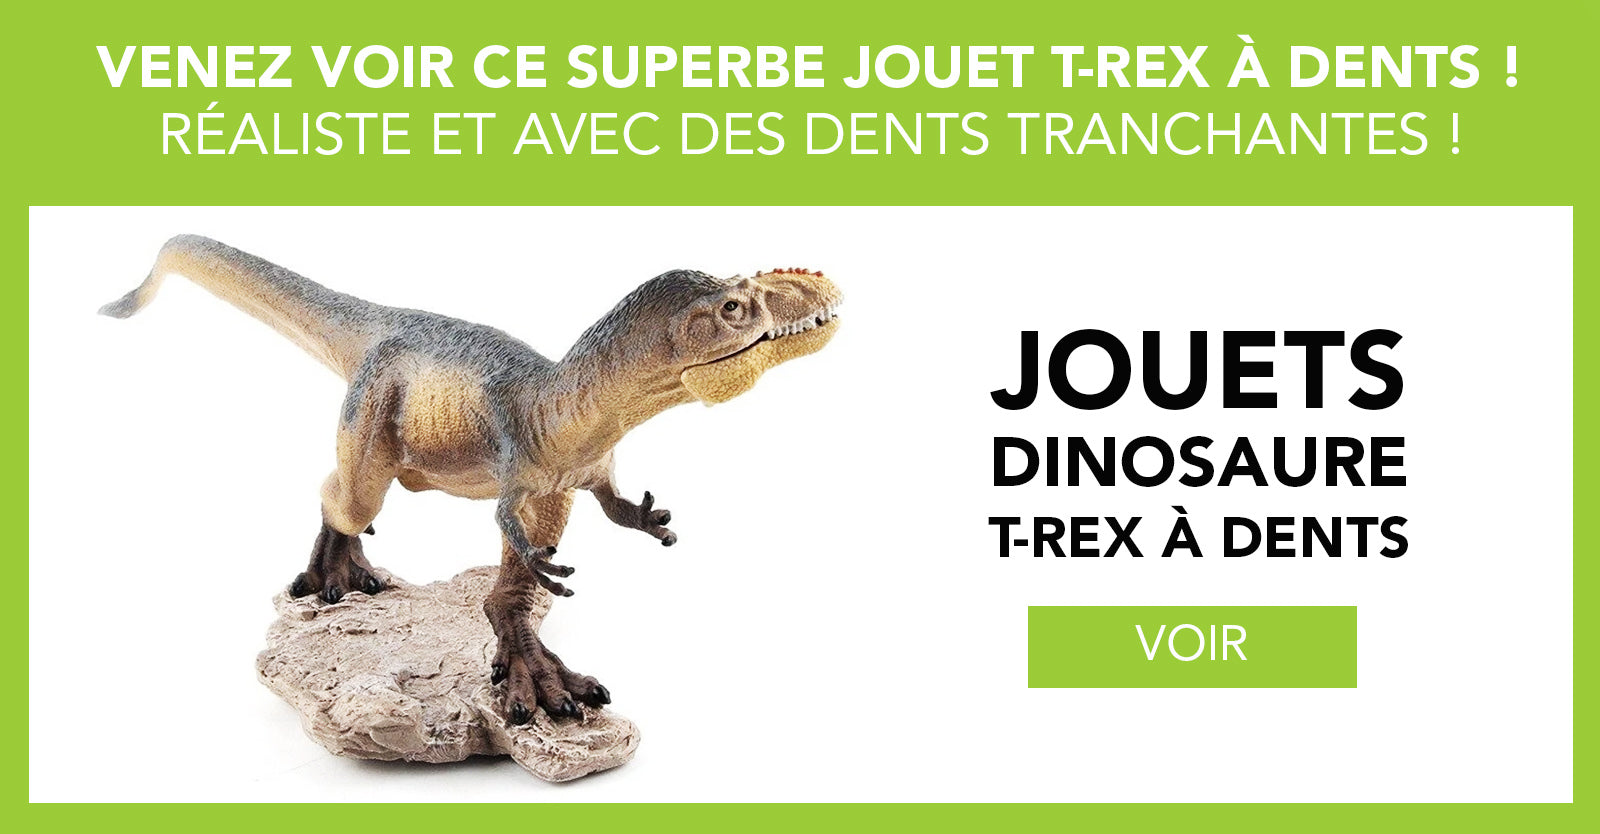 Jouet dinosaure T-rex réaliste avec dents